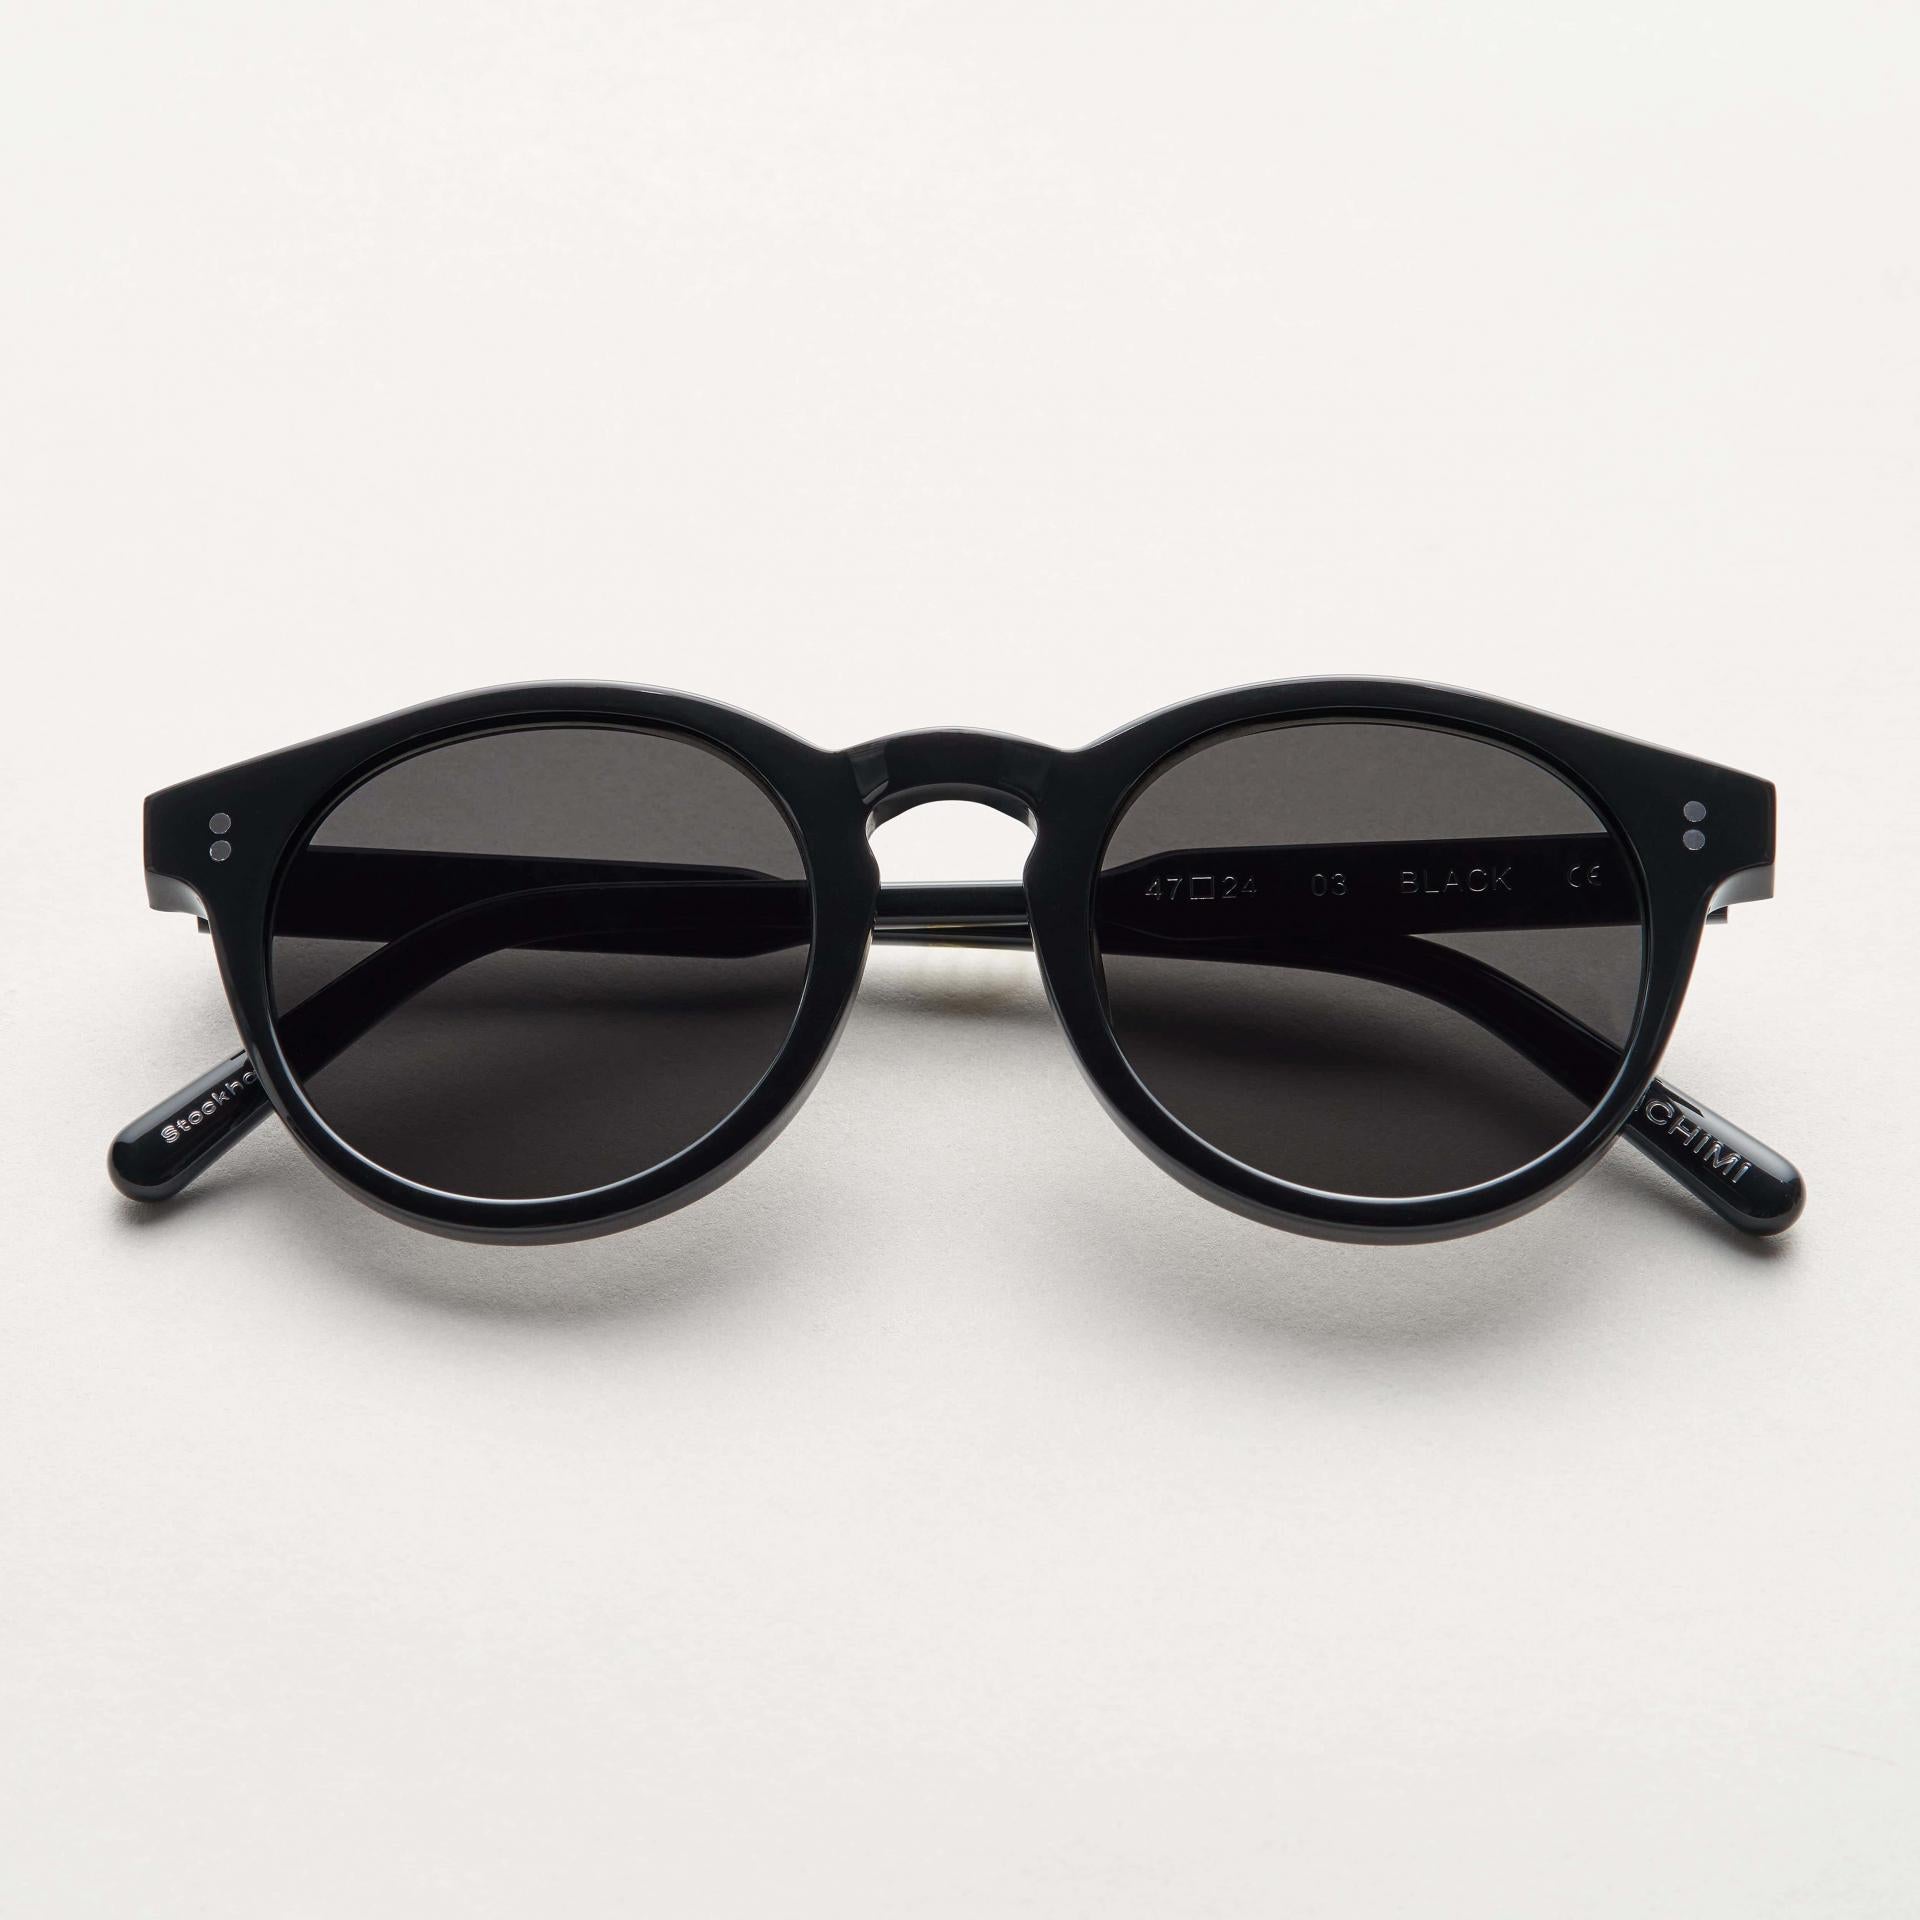 Chimi Sonnenbrille Modell 03 Black